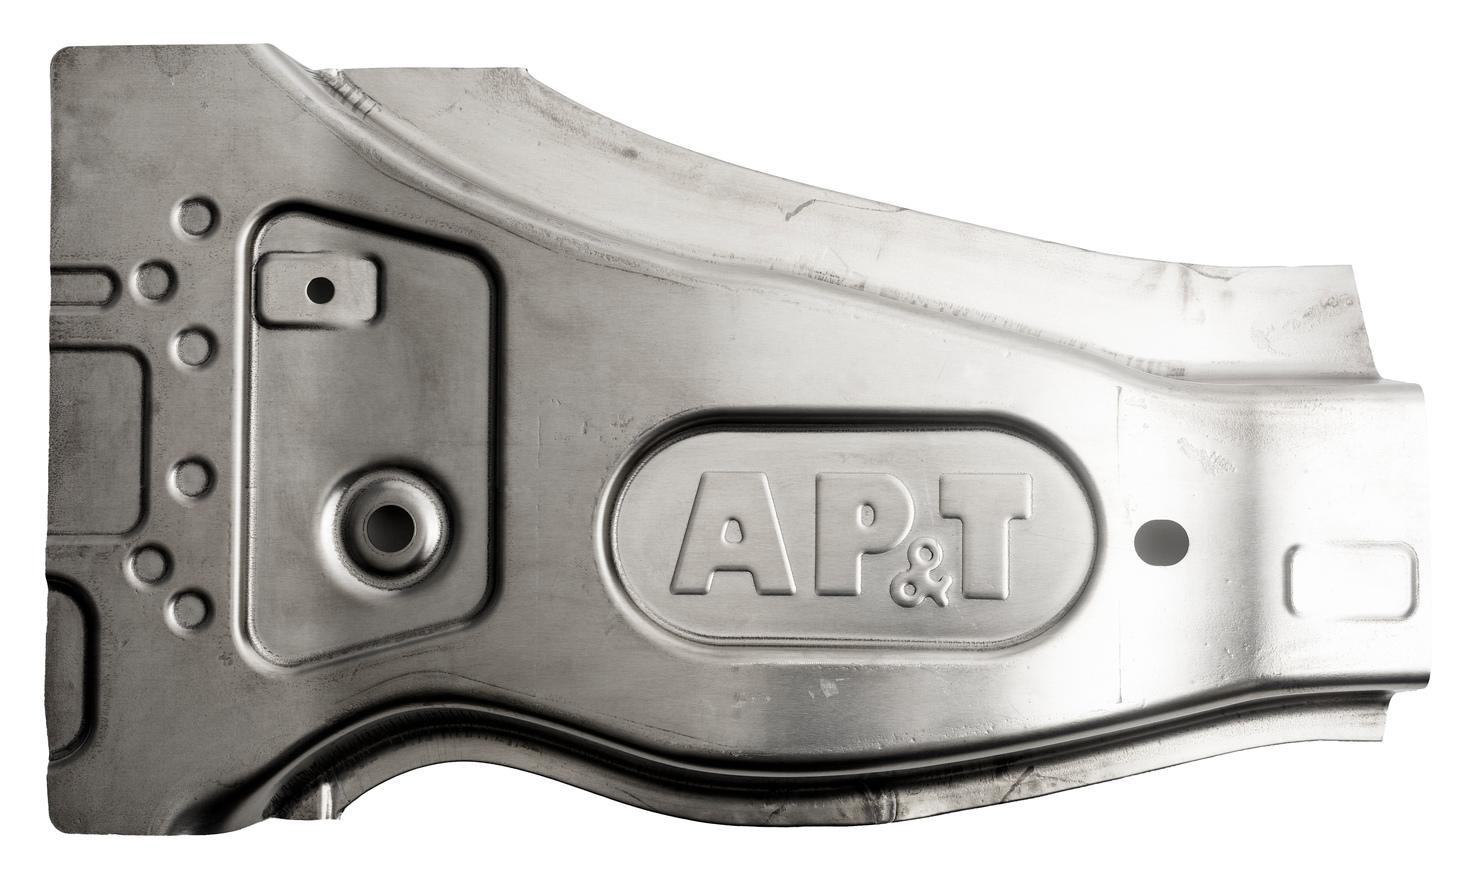 AP&T、Termisk Systemteknik和西部大学共同测试了在铝板热成形过程中用于工艺监控的不同测量系统。